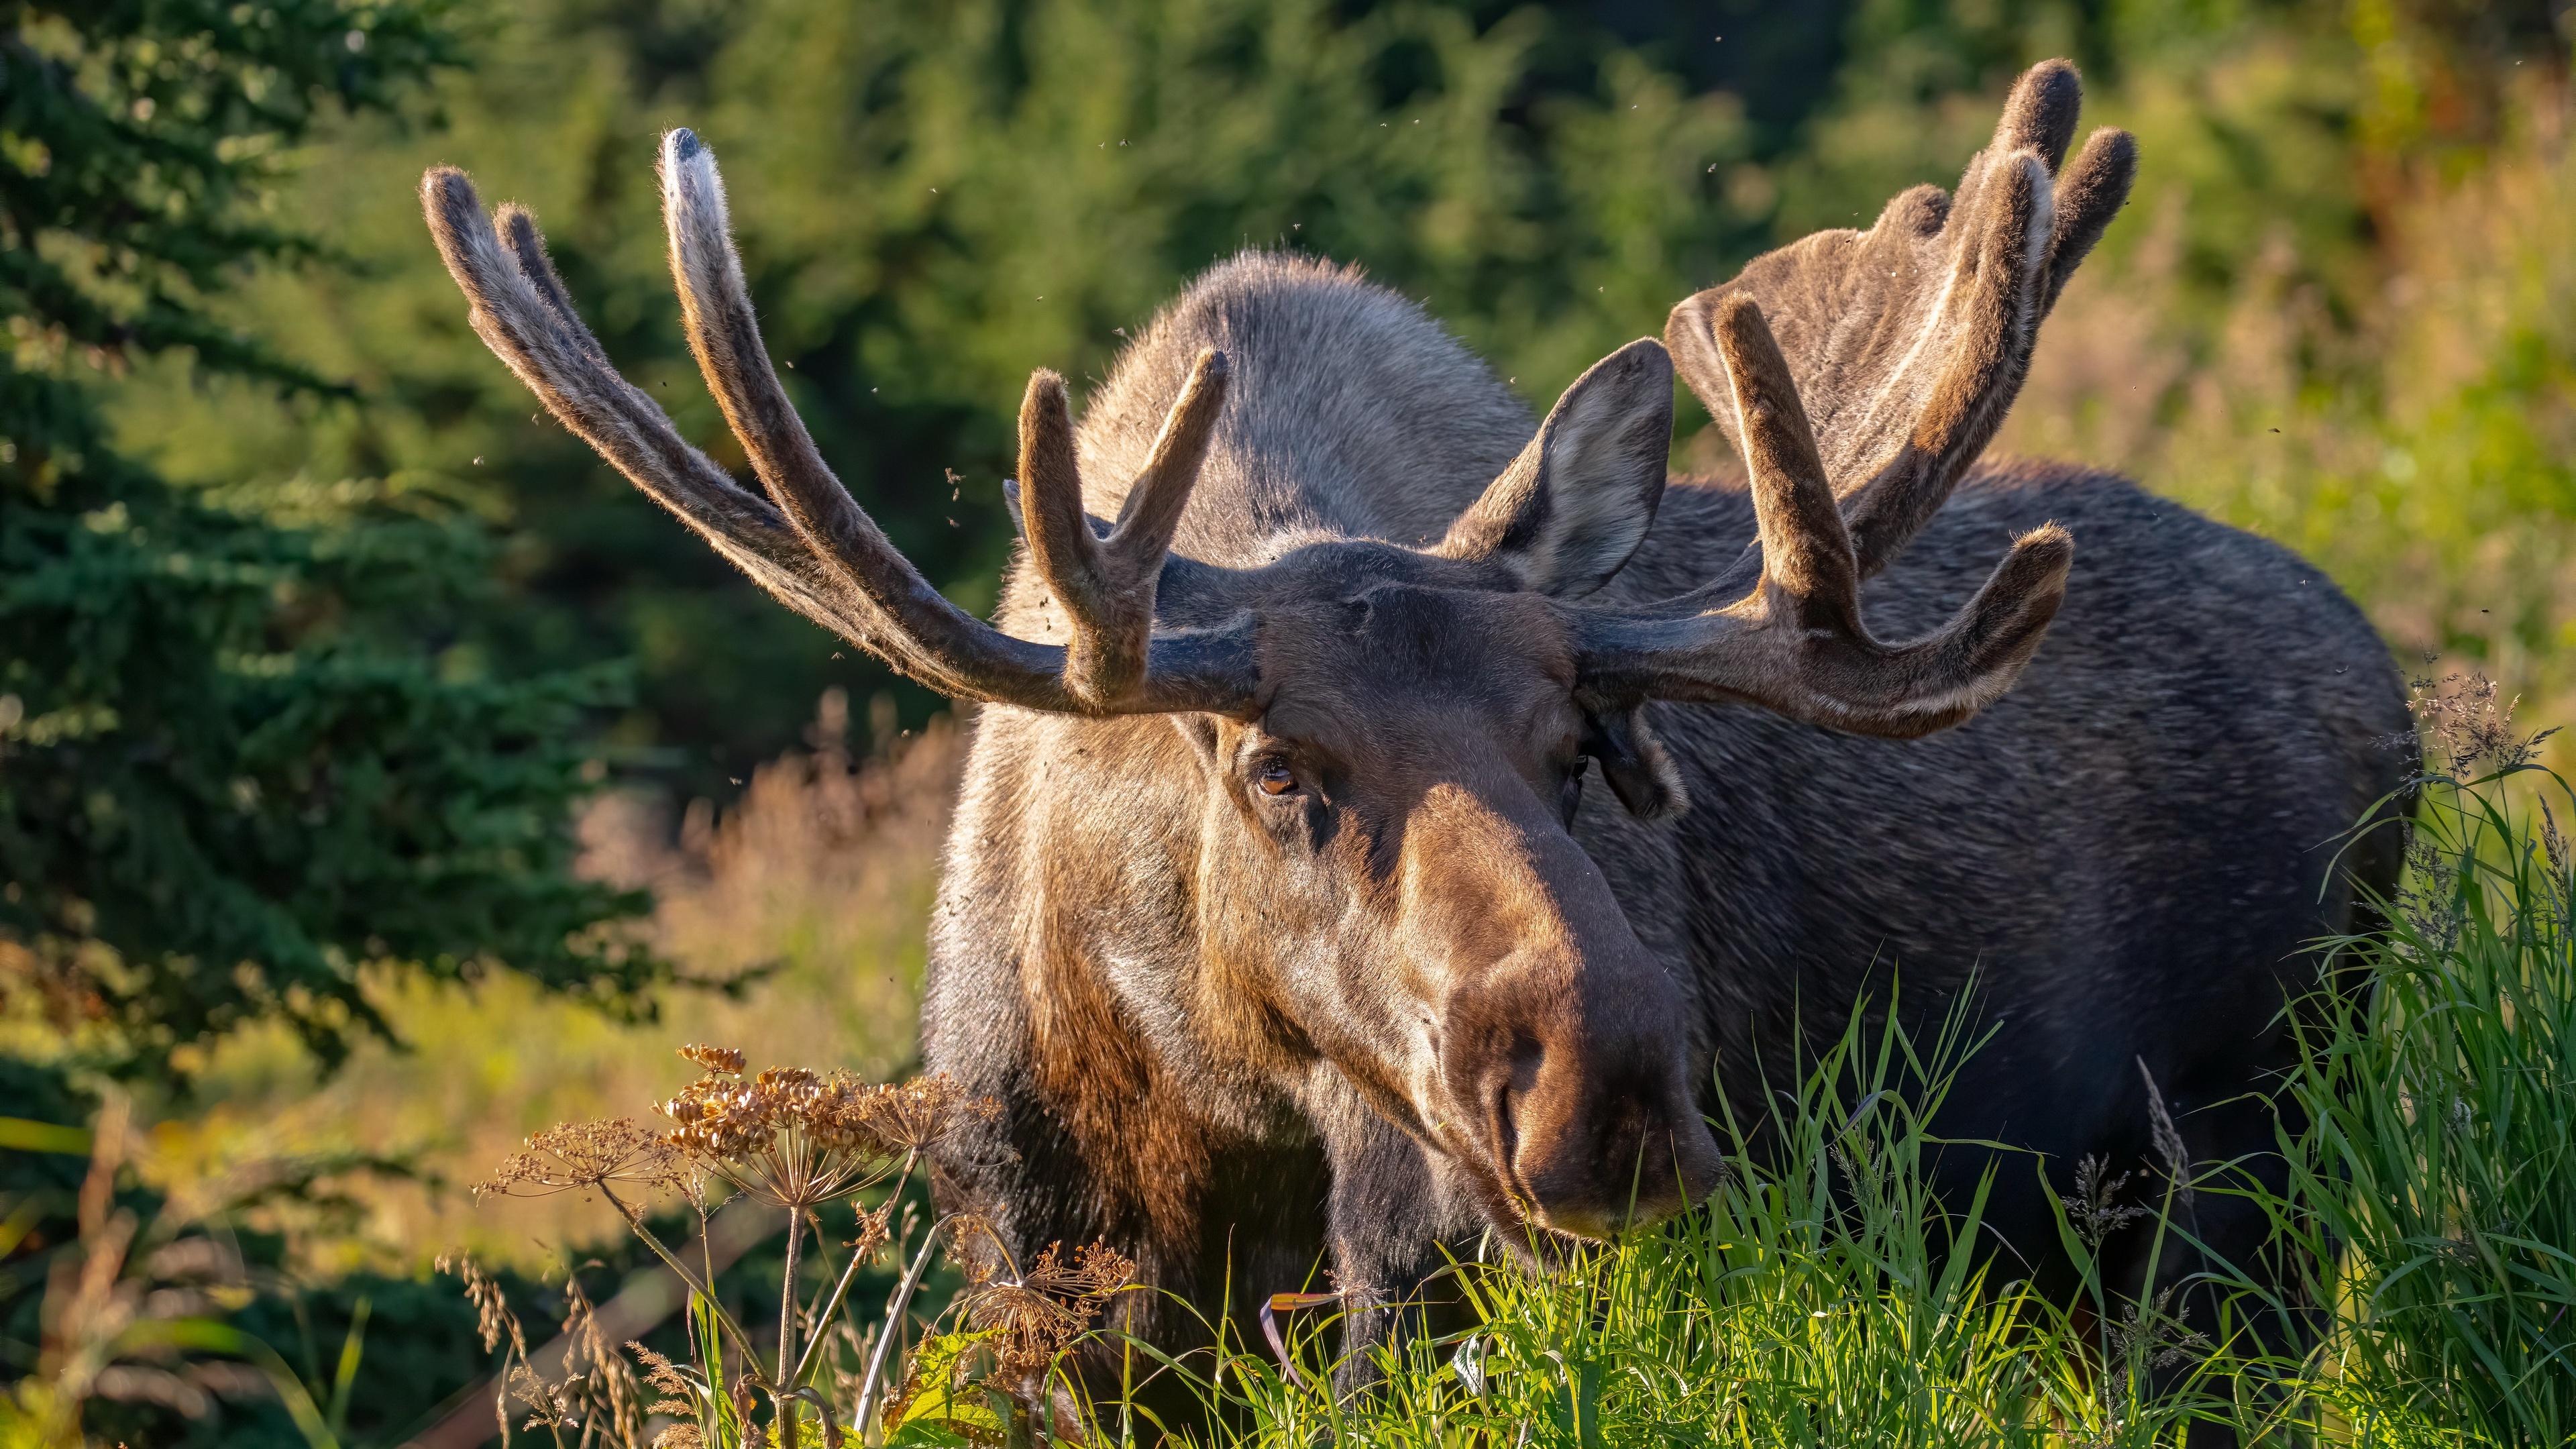 Graceful moose, Stunning wildlife, Impressive antlers, Nature's marvel, 3840x2160 4K Desktop